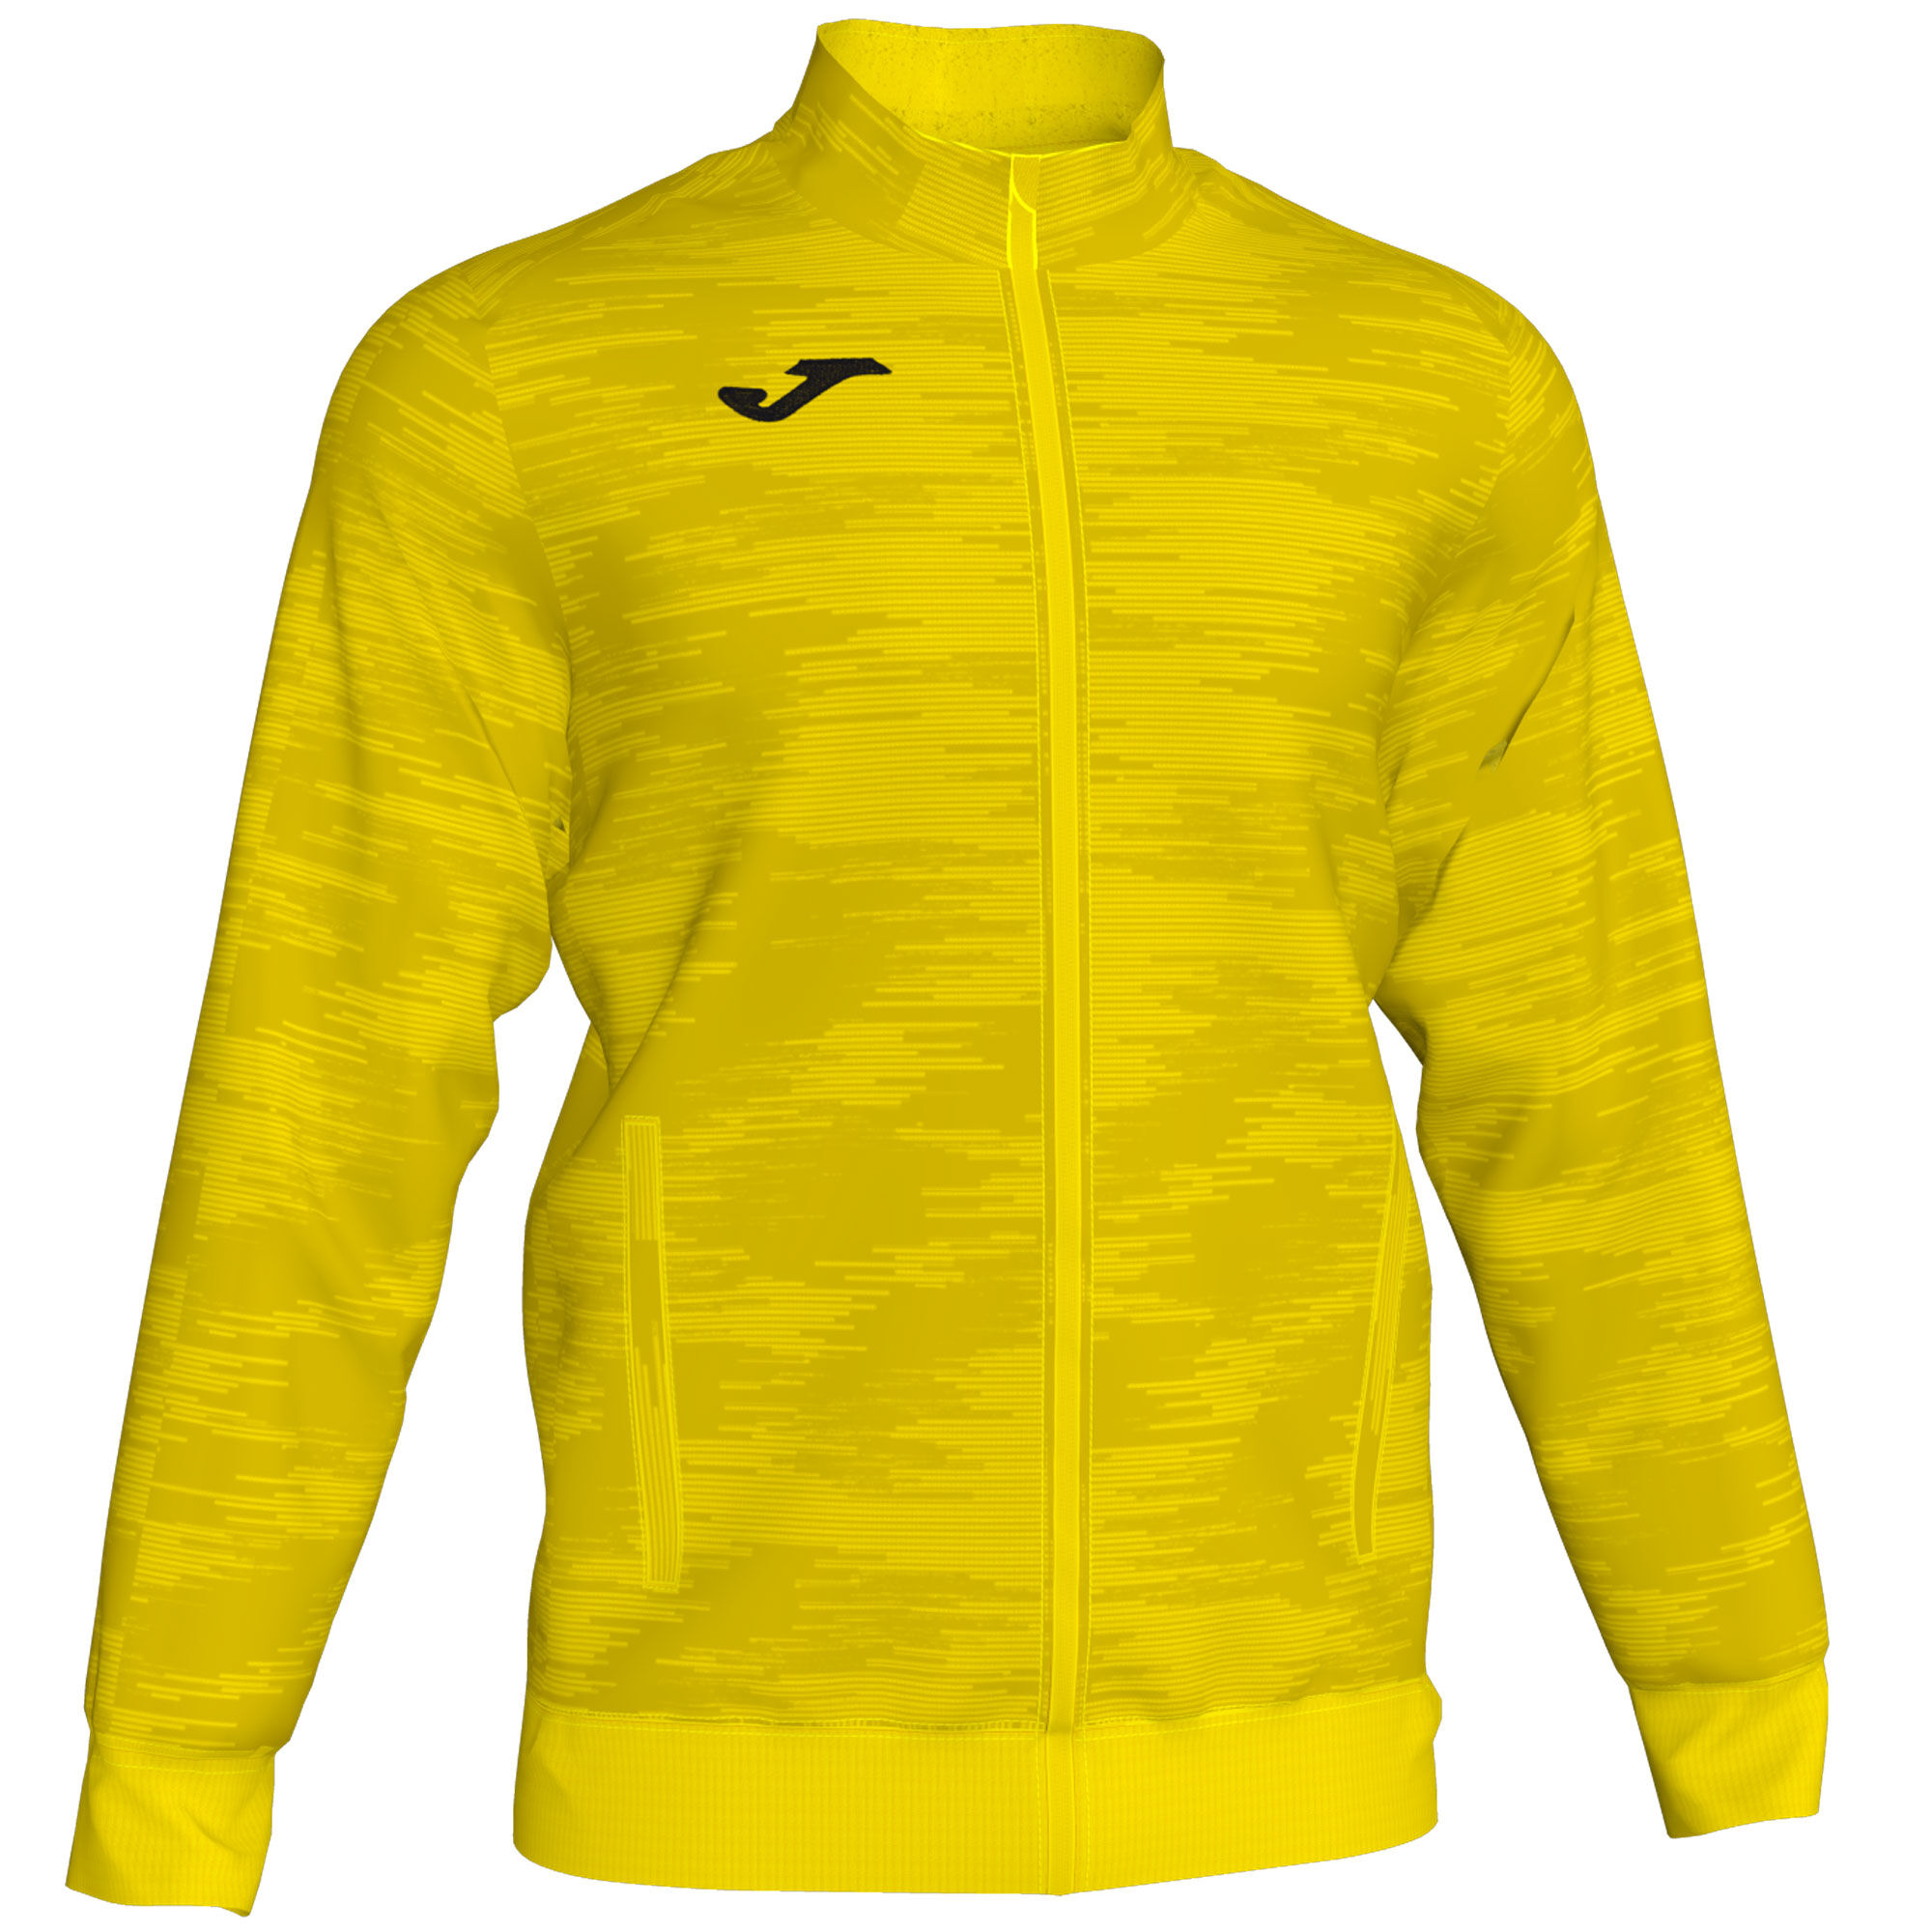 Jachetă bărbaȚi Grafity galben